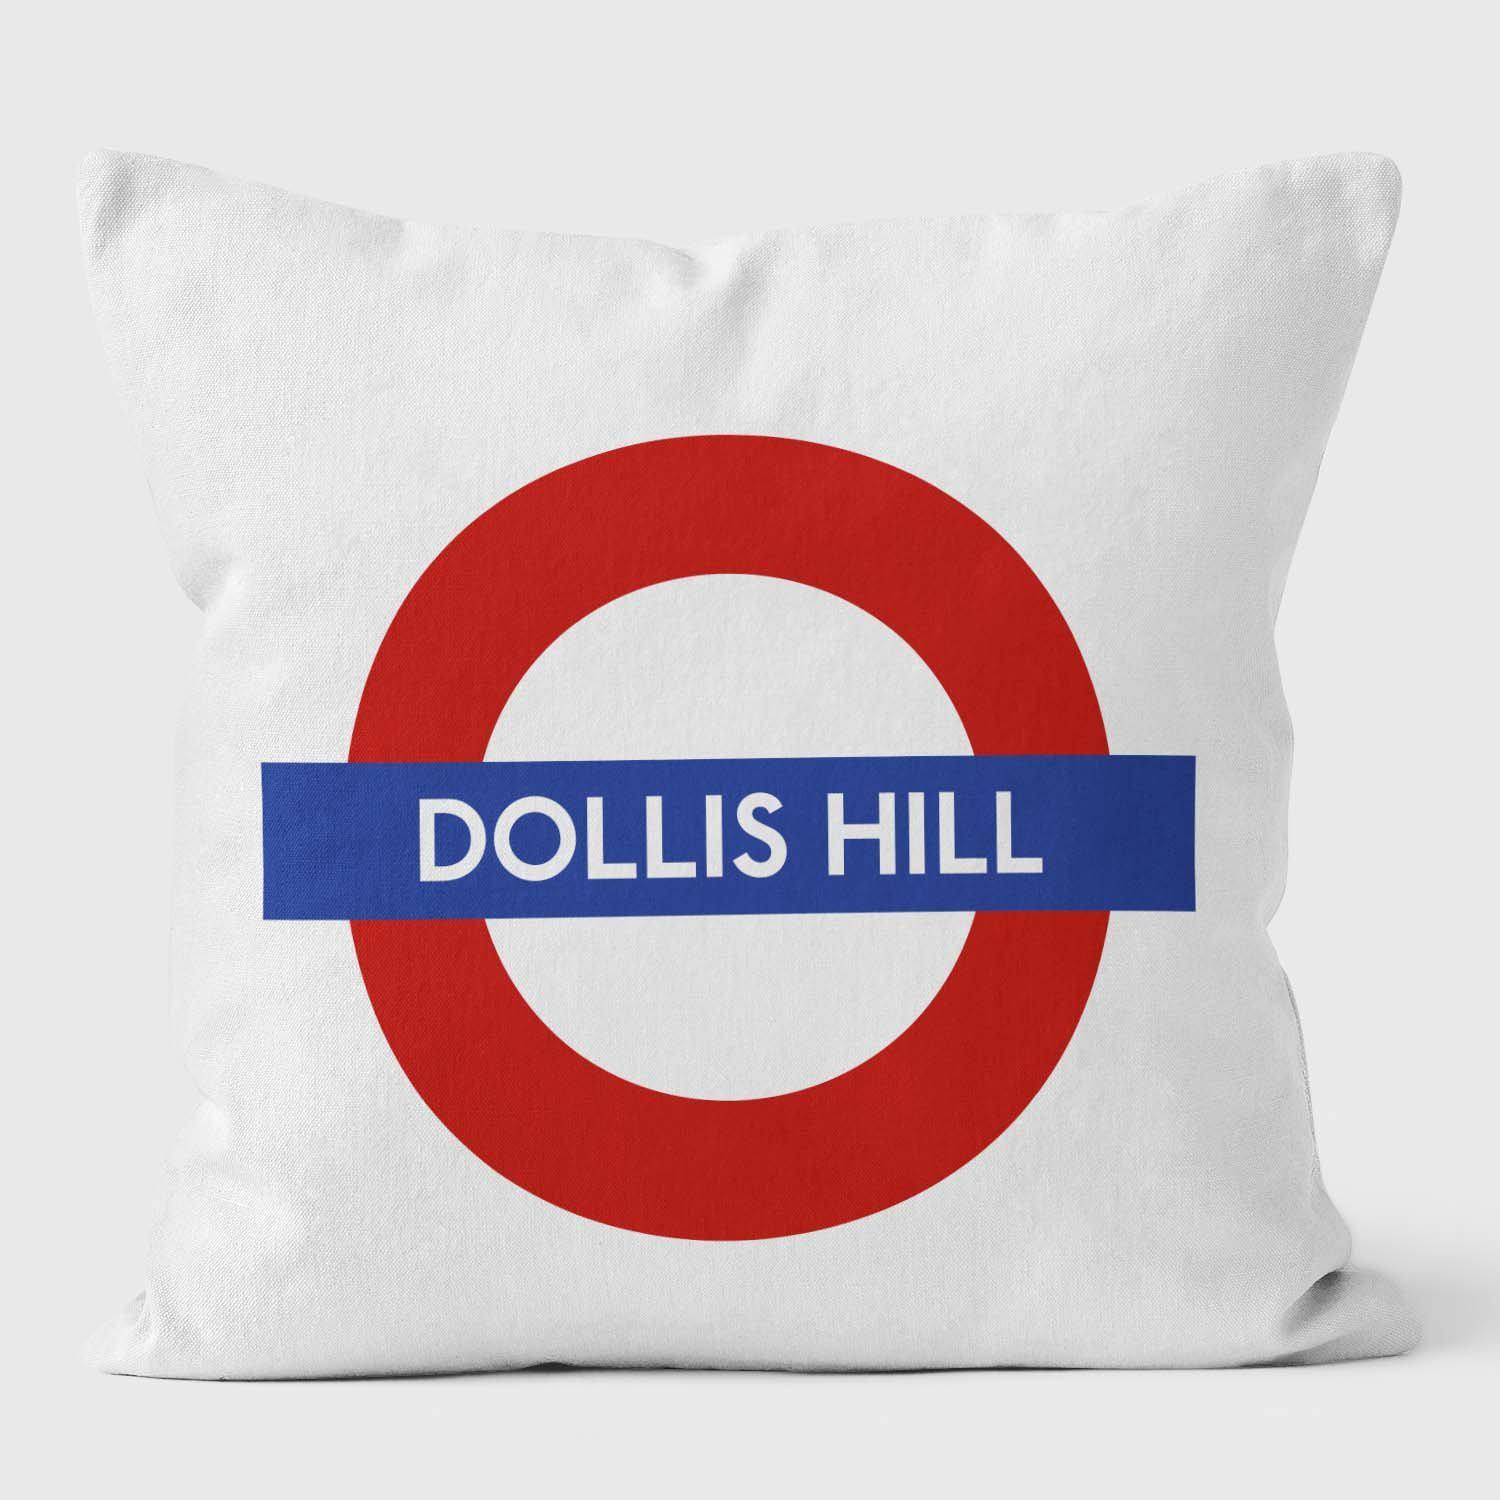 Dollis Hill London Underground Tube Station Roundel Cushion - Handmade Cushions UK - WeLoveCushions